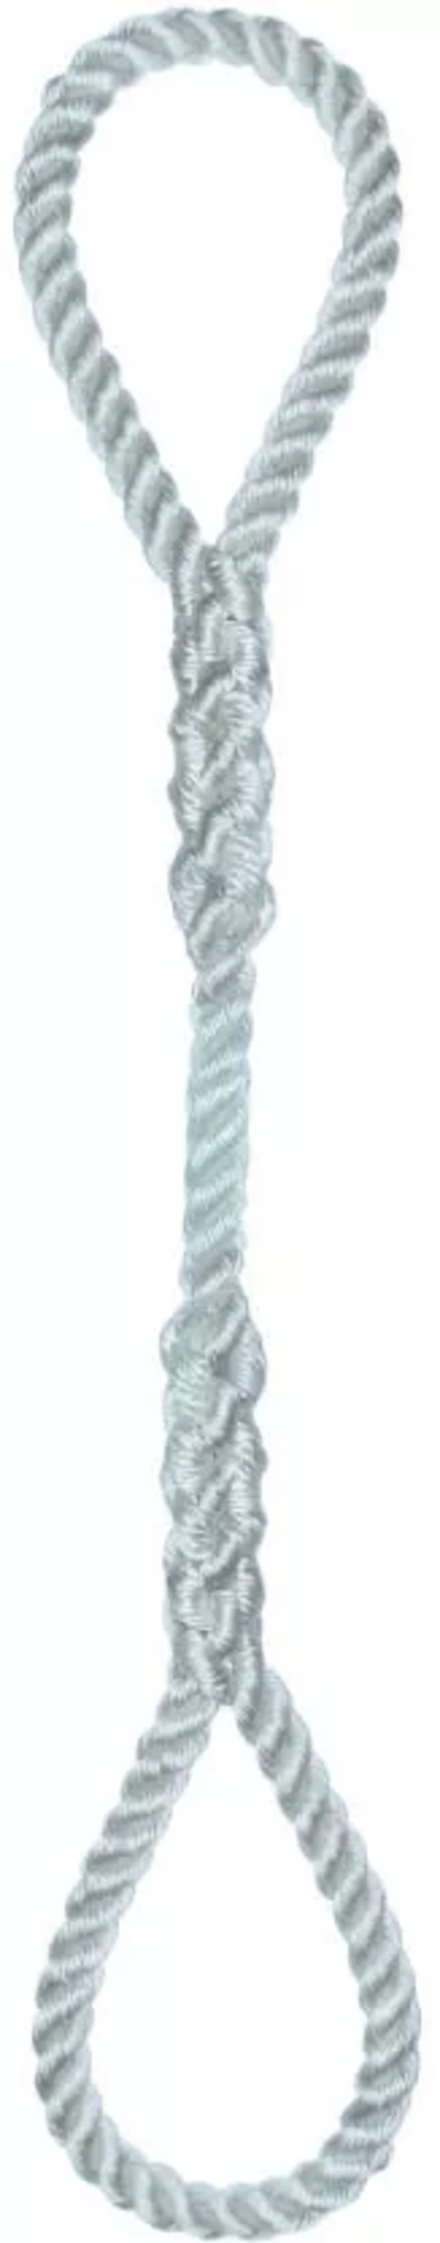 Élingue corde d.24 mm cmu 717 kg 2 grandes boucles long 1 m LEVAC - 4404M